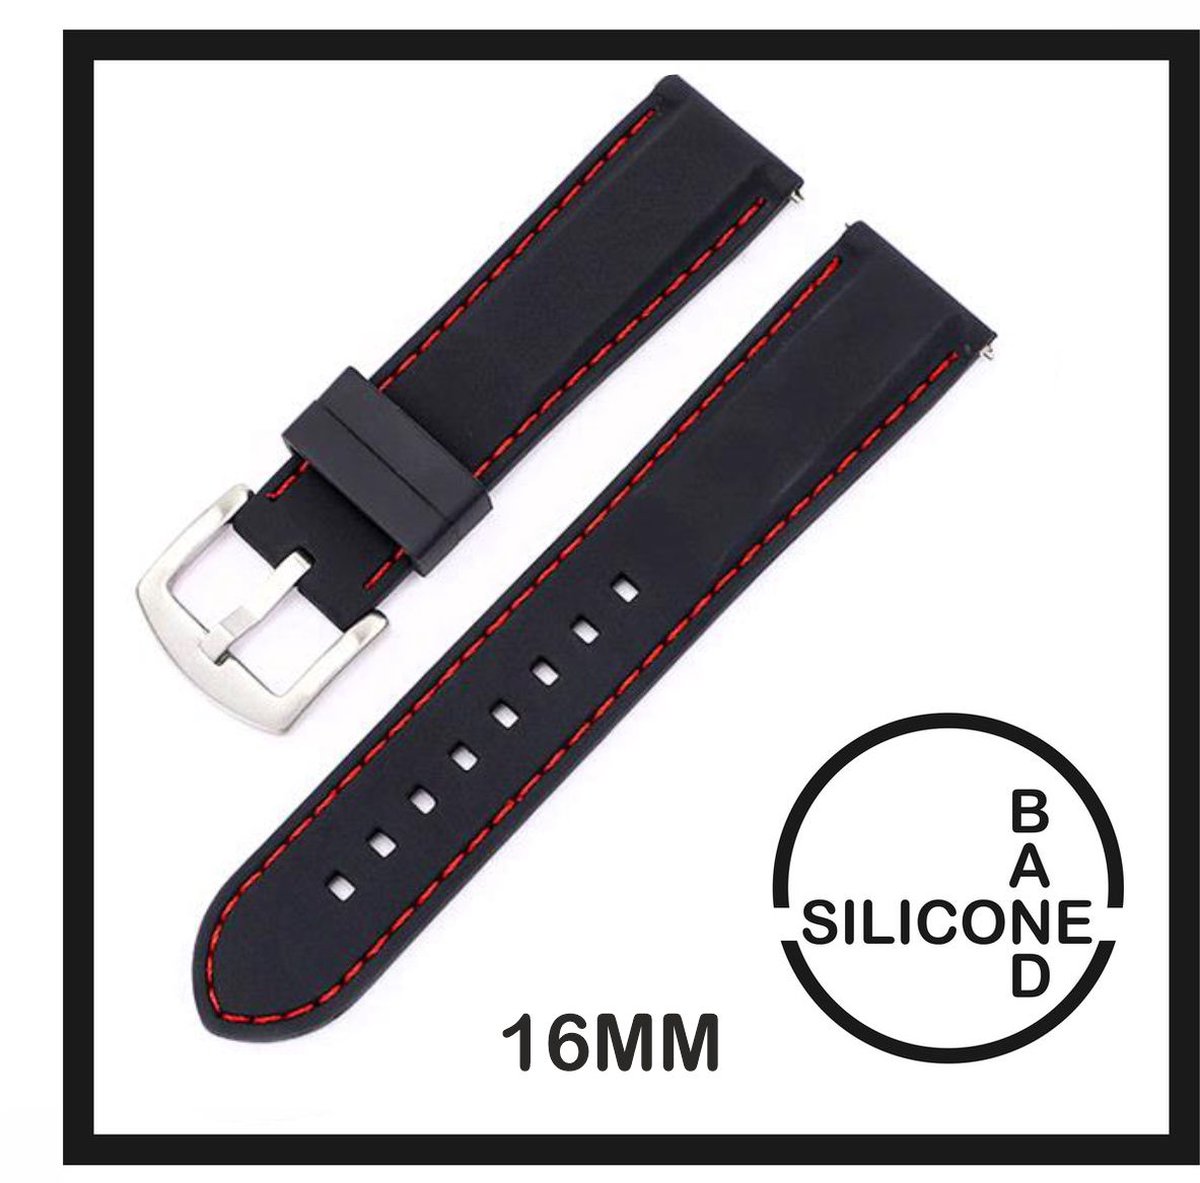 16mm Rubber Siliconen horlogeband Zwart met Rode stiksels passend op o.a Casio Seiko Citizen en alle andere merken - 16 mm Bandje - Horlogebandje horlogeband